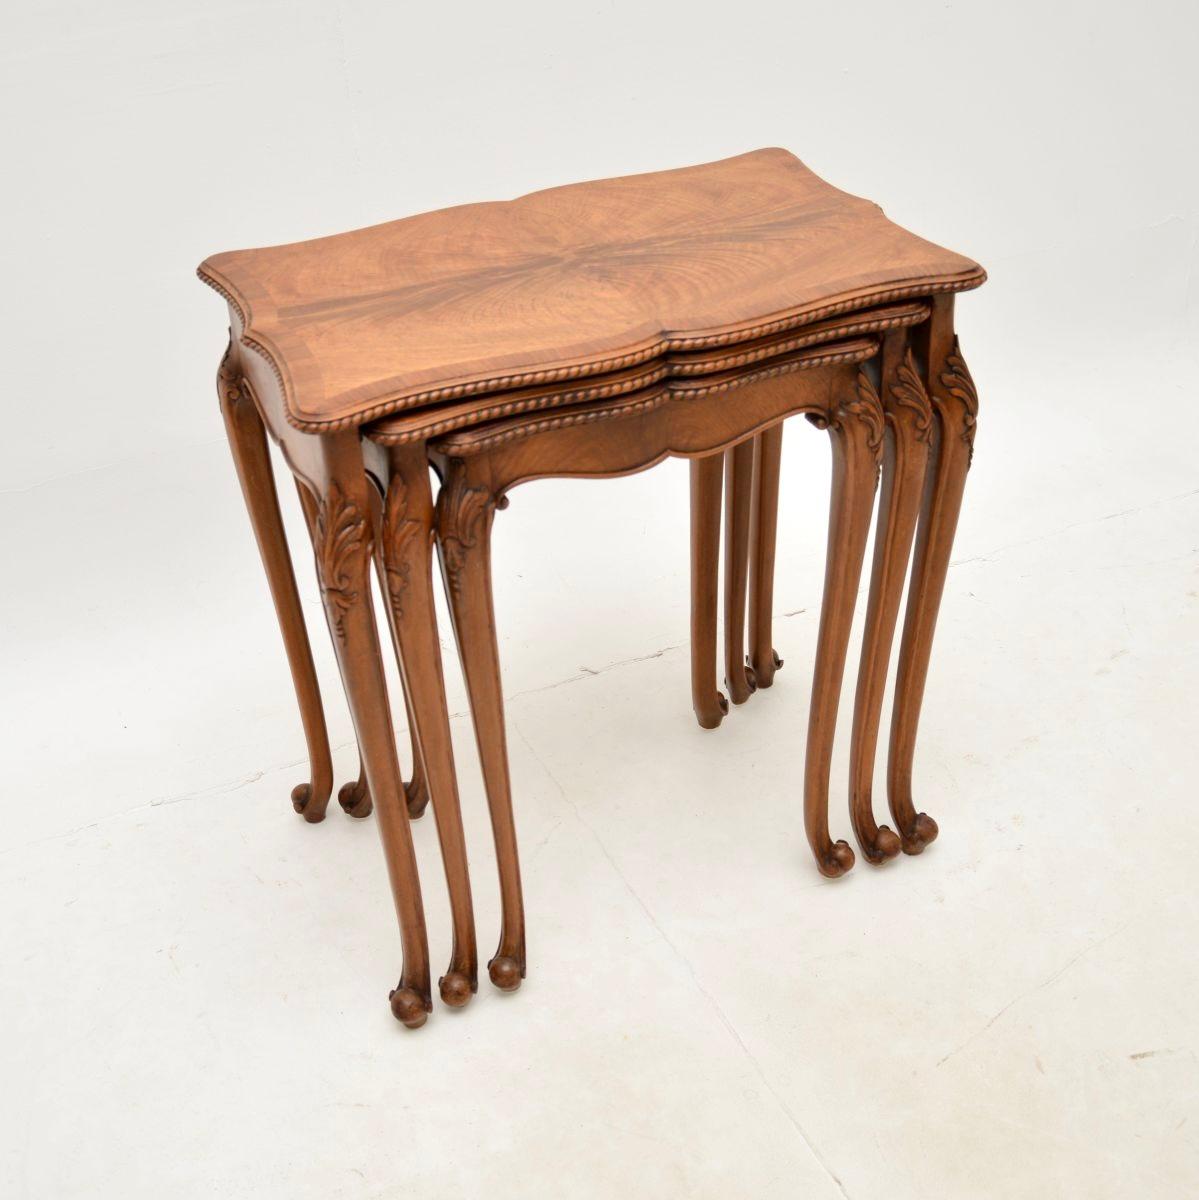 Ein wunderschönes antikes Tischnest aus gemasertem Nussbaumholz. Sie wurde in England hergestellt und stammt aus den 1930er Jahren.

Die Qualität ist hervorragend, dies hat serpentinenförmige Kanten mit feinen Schnitzereien rundum. Er steht auf